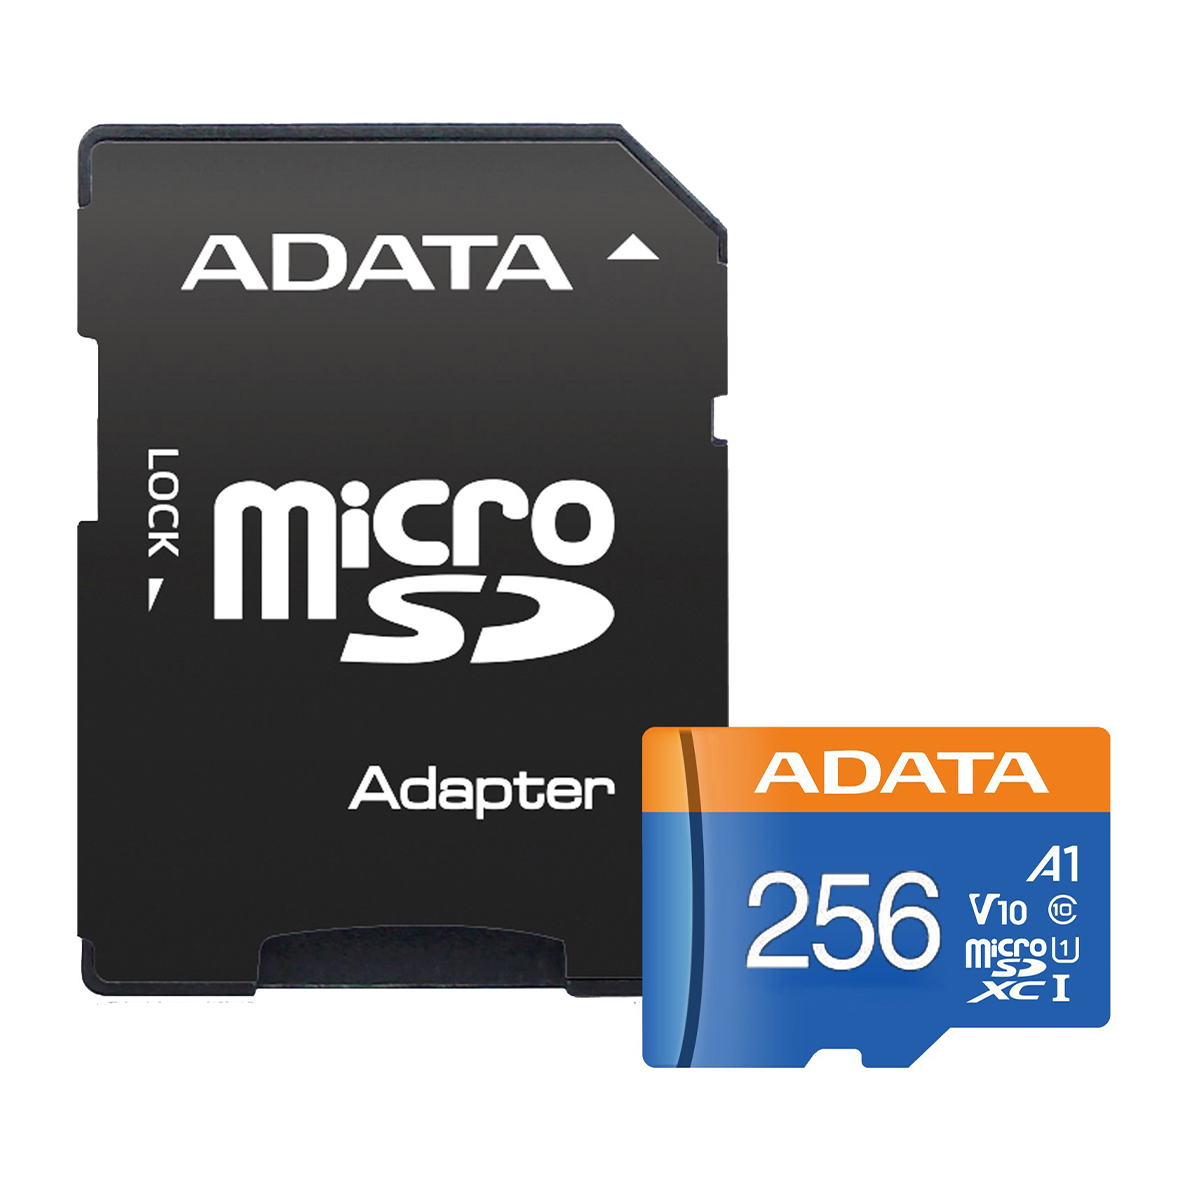 کارت حافظه microSDXC ای دیتا مدل Premier کلاس 10 استاندارد UHS-I سرعت 100MBps ظرفیت 256 گیگابایت به همراه آداپتور-آبی